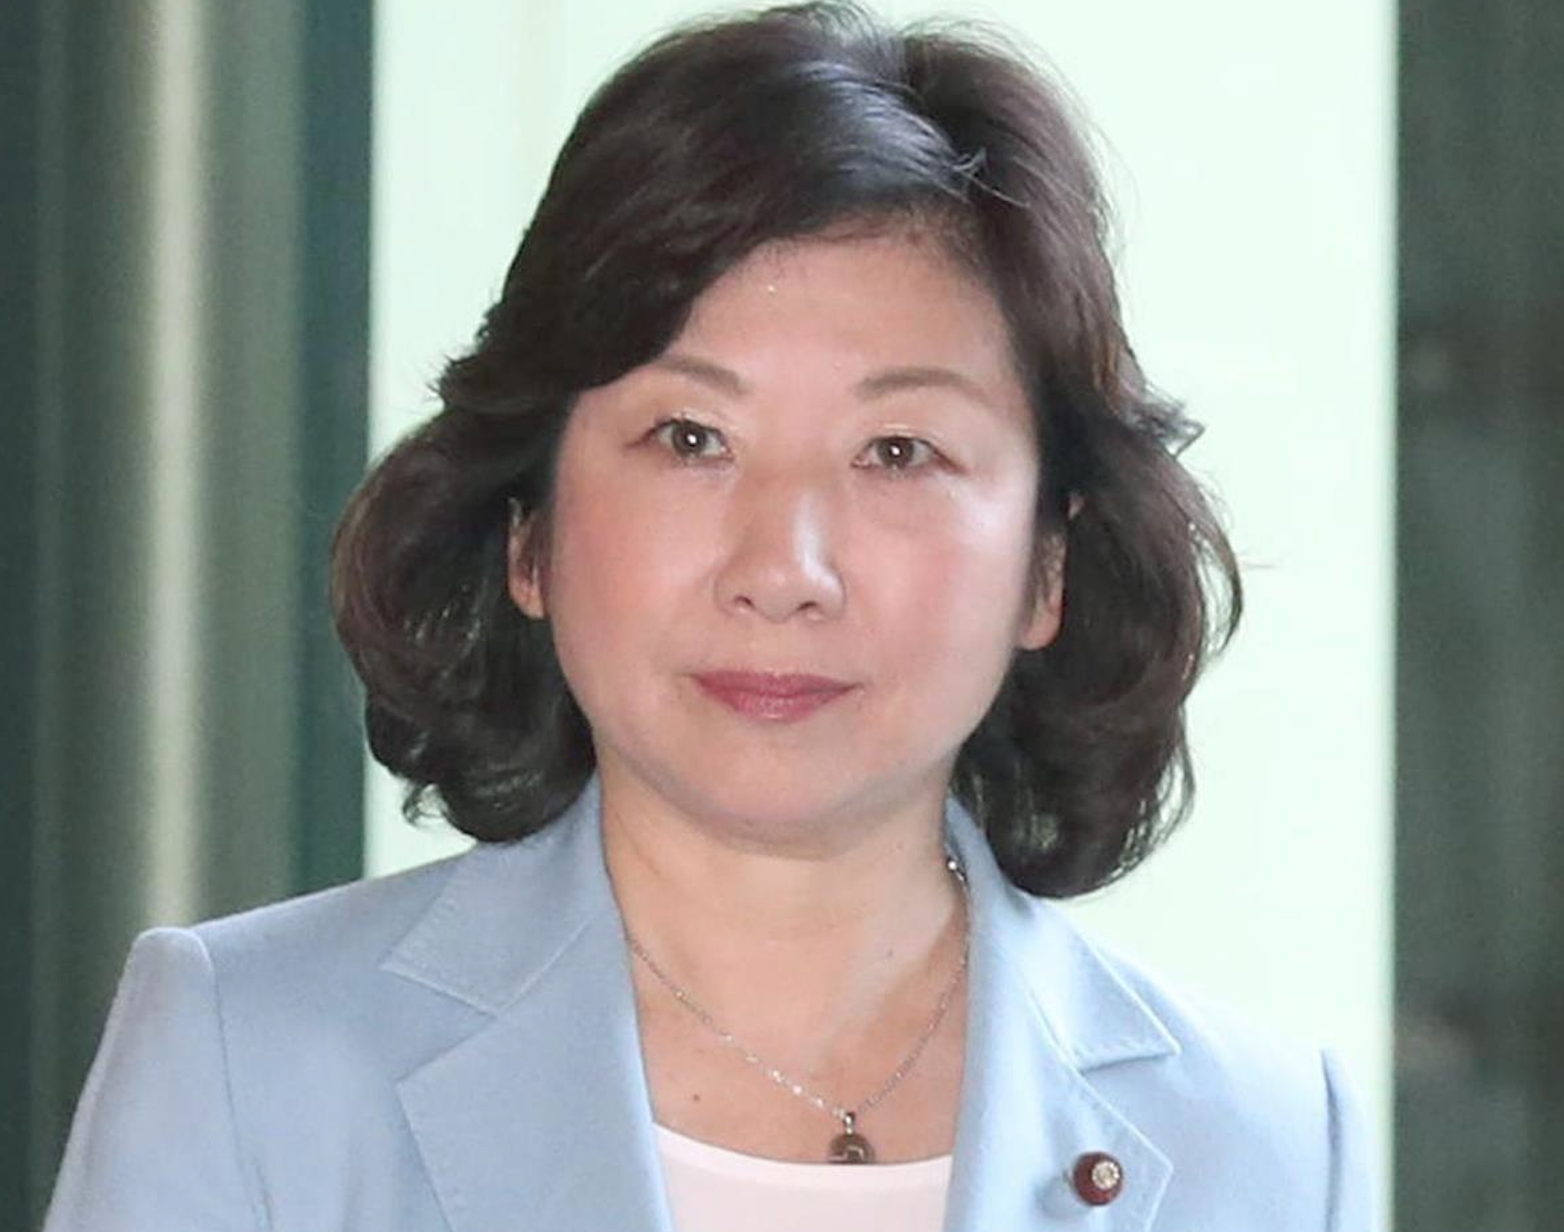 次期首相候補 野田聖子、公職選挙法違反ツイートで大炎上